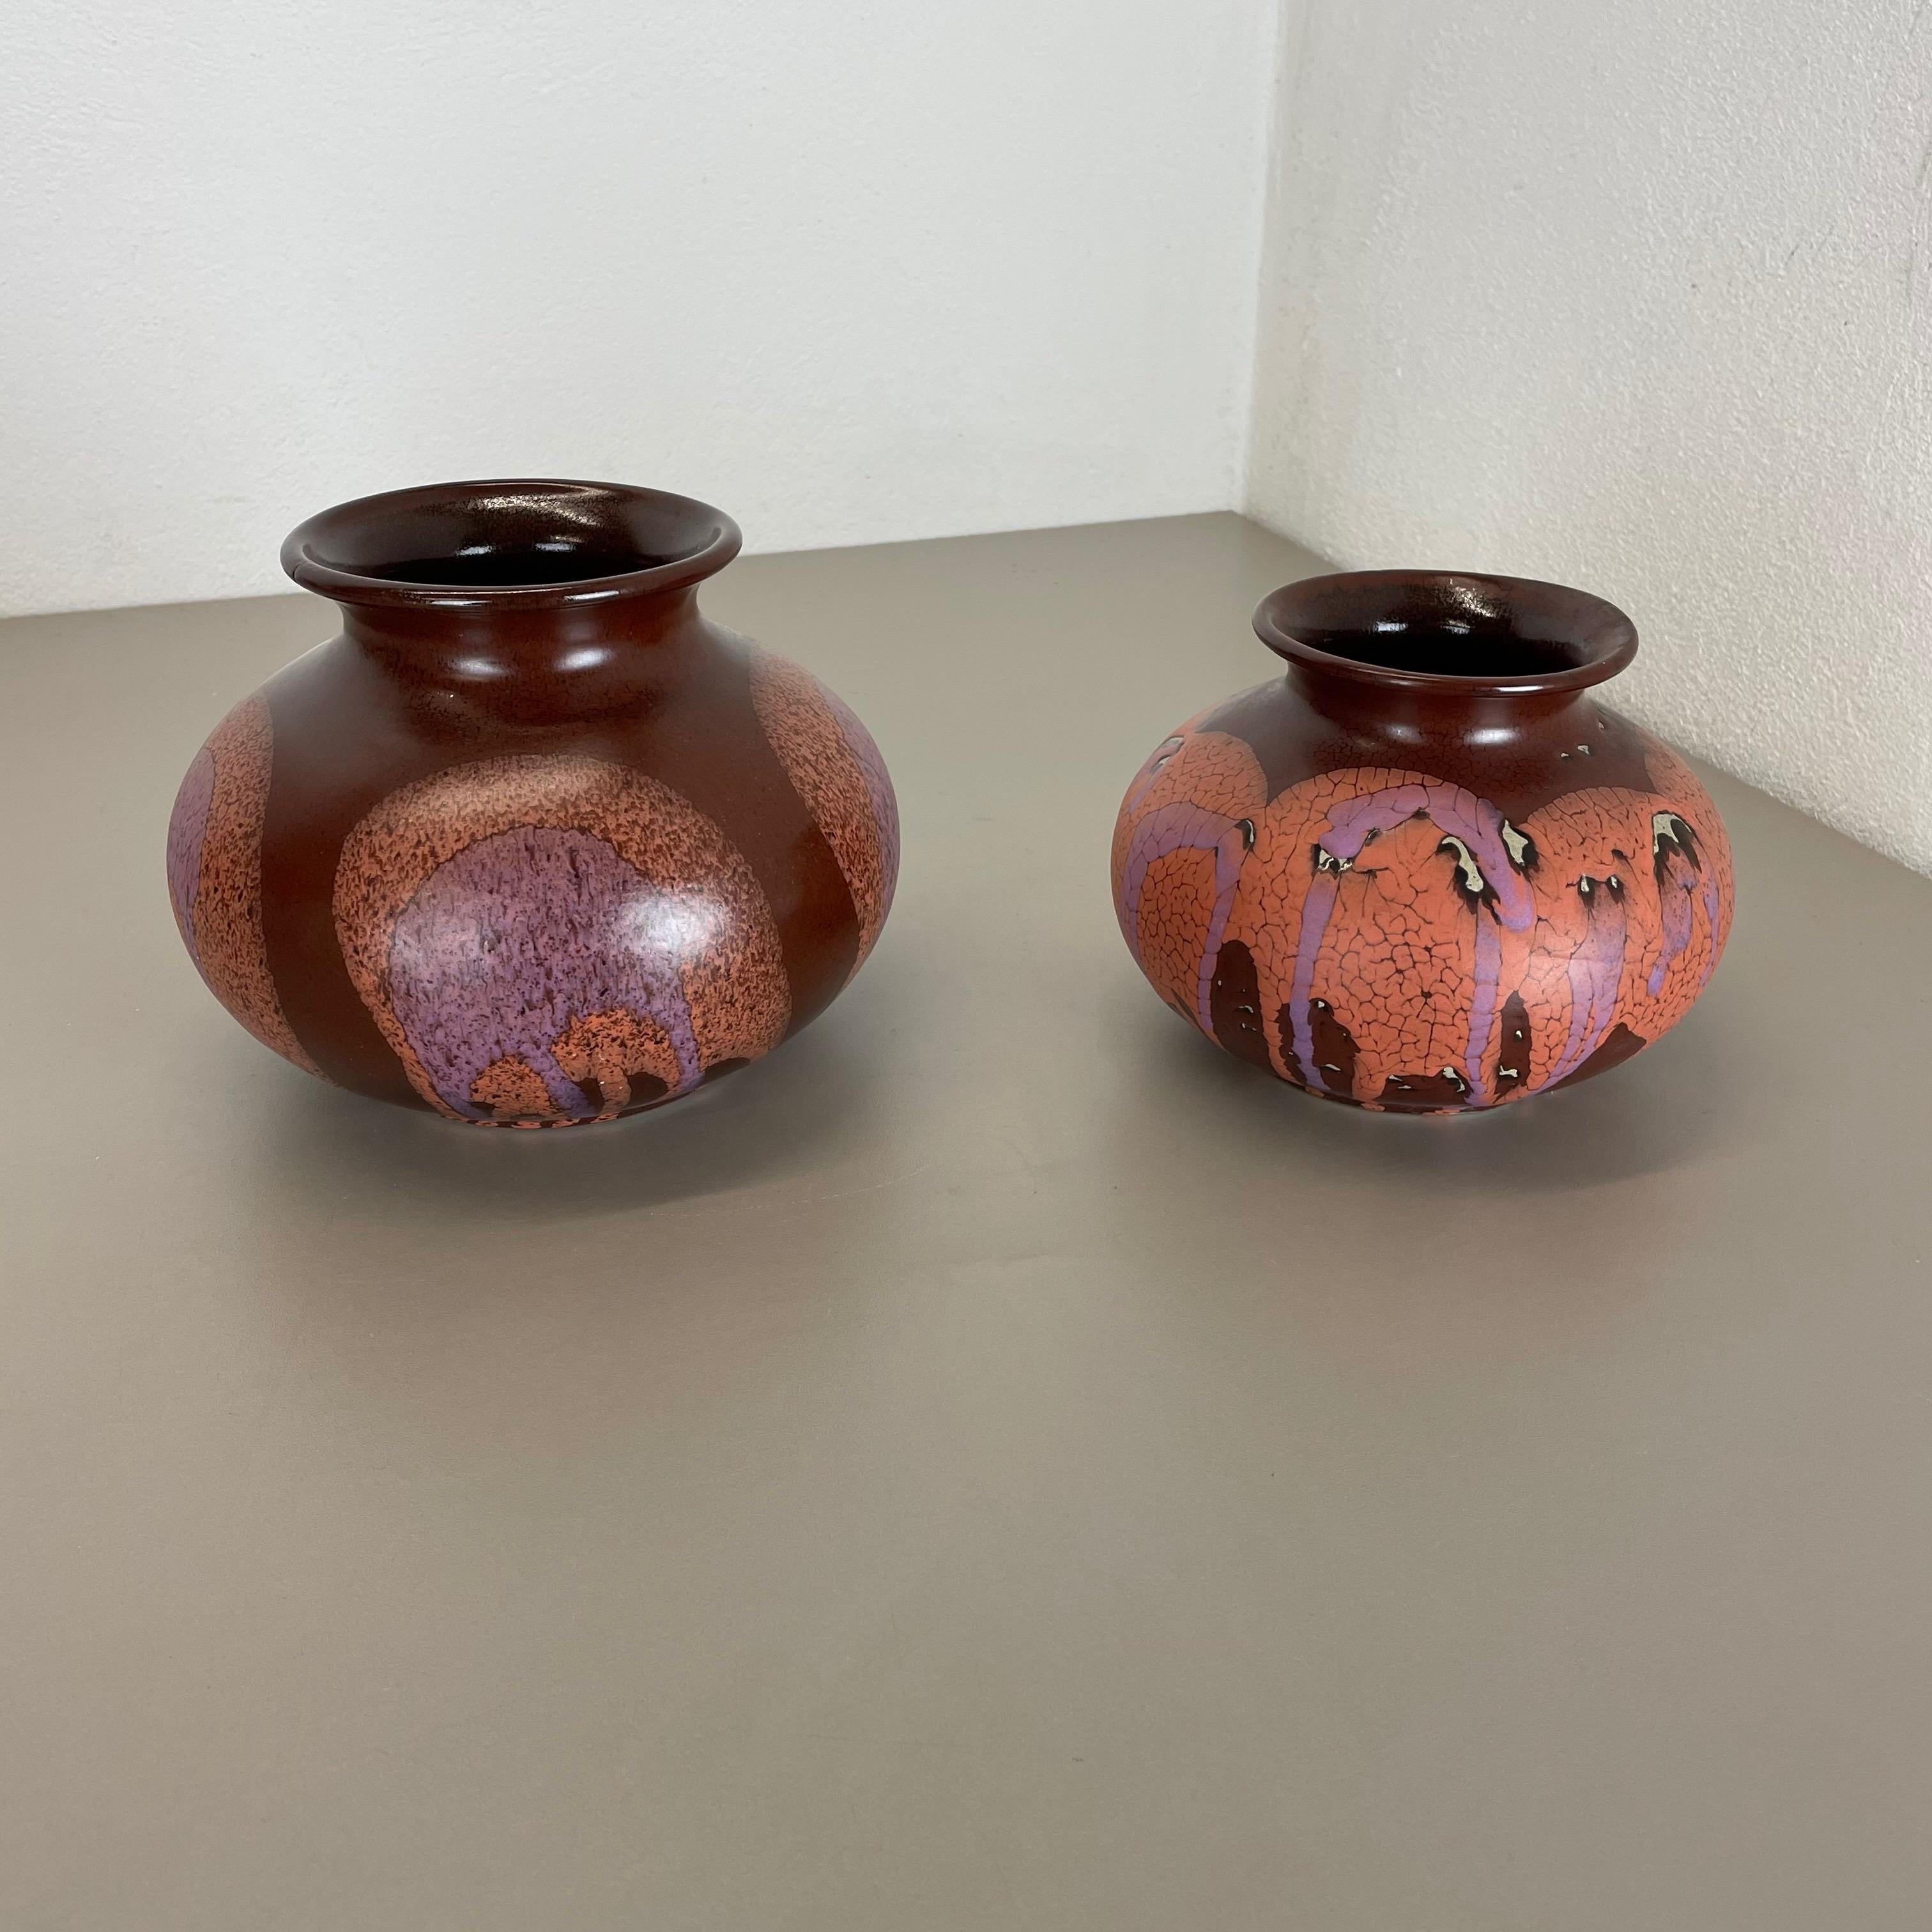 Artikel:

Satz mit zwei Keramikvasen-Elementen


Produzent:

Steuler, Deutschland



Jahrzehnt:

1970s


Beschreibung:

Diese originale Vintage-Vase wurde in den 1970er Jahren in Deutschland hergestellt. Sie ist aus Keramik in